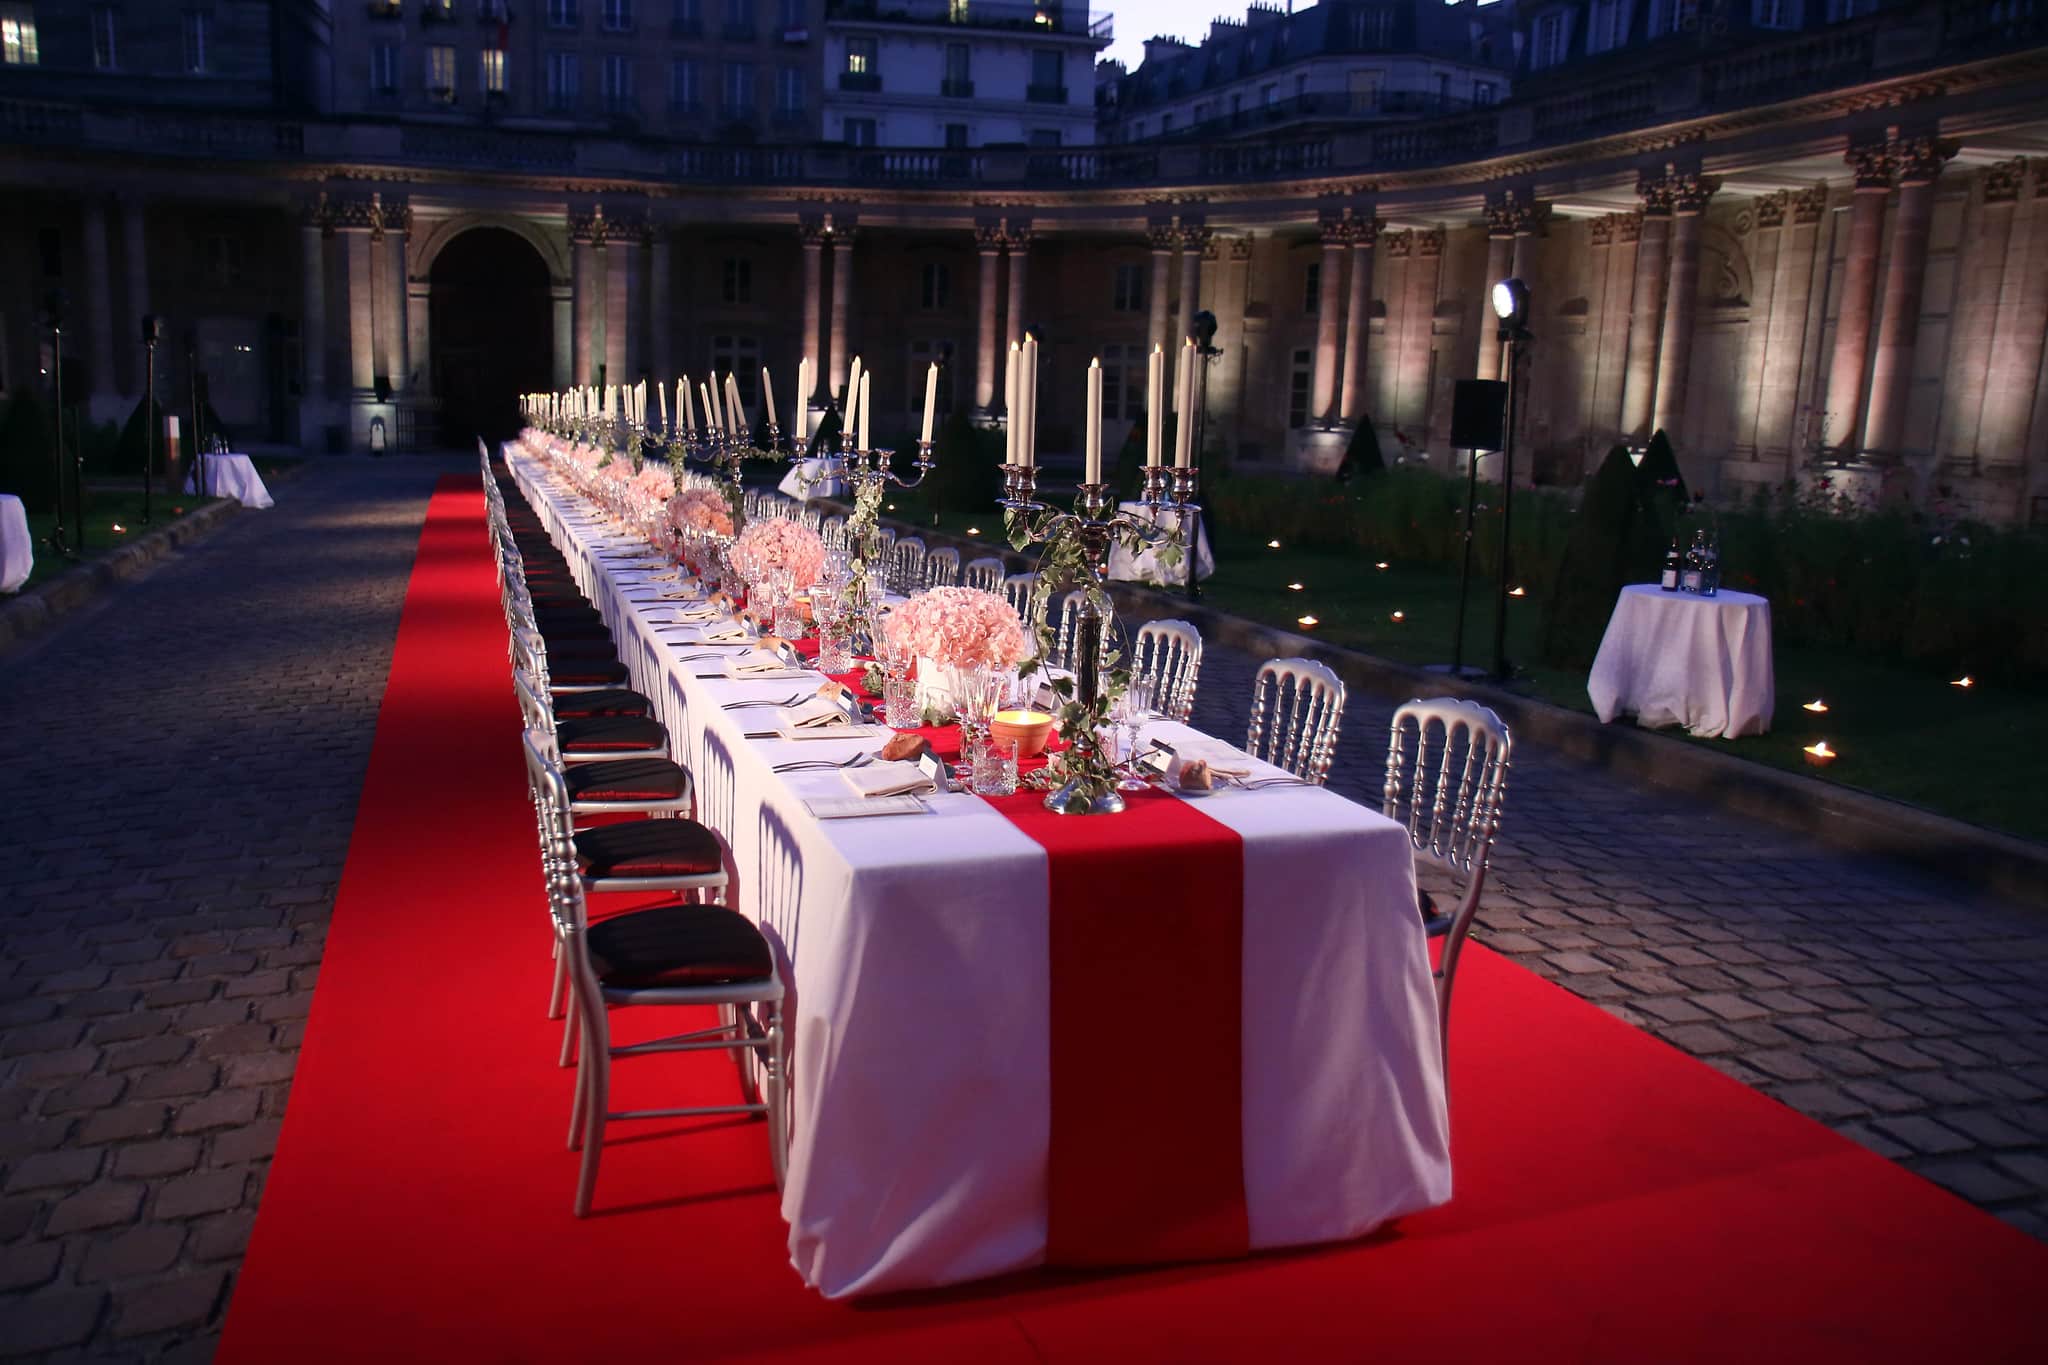 Diner d exception paris luxe chandeliers fleurs table nappe rouge et blanche cour d honneur hotel de soubise paris evenementiel agence WATO paris